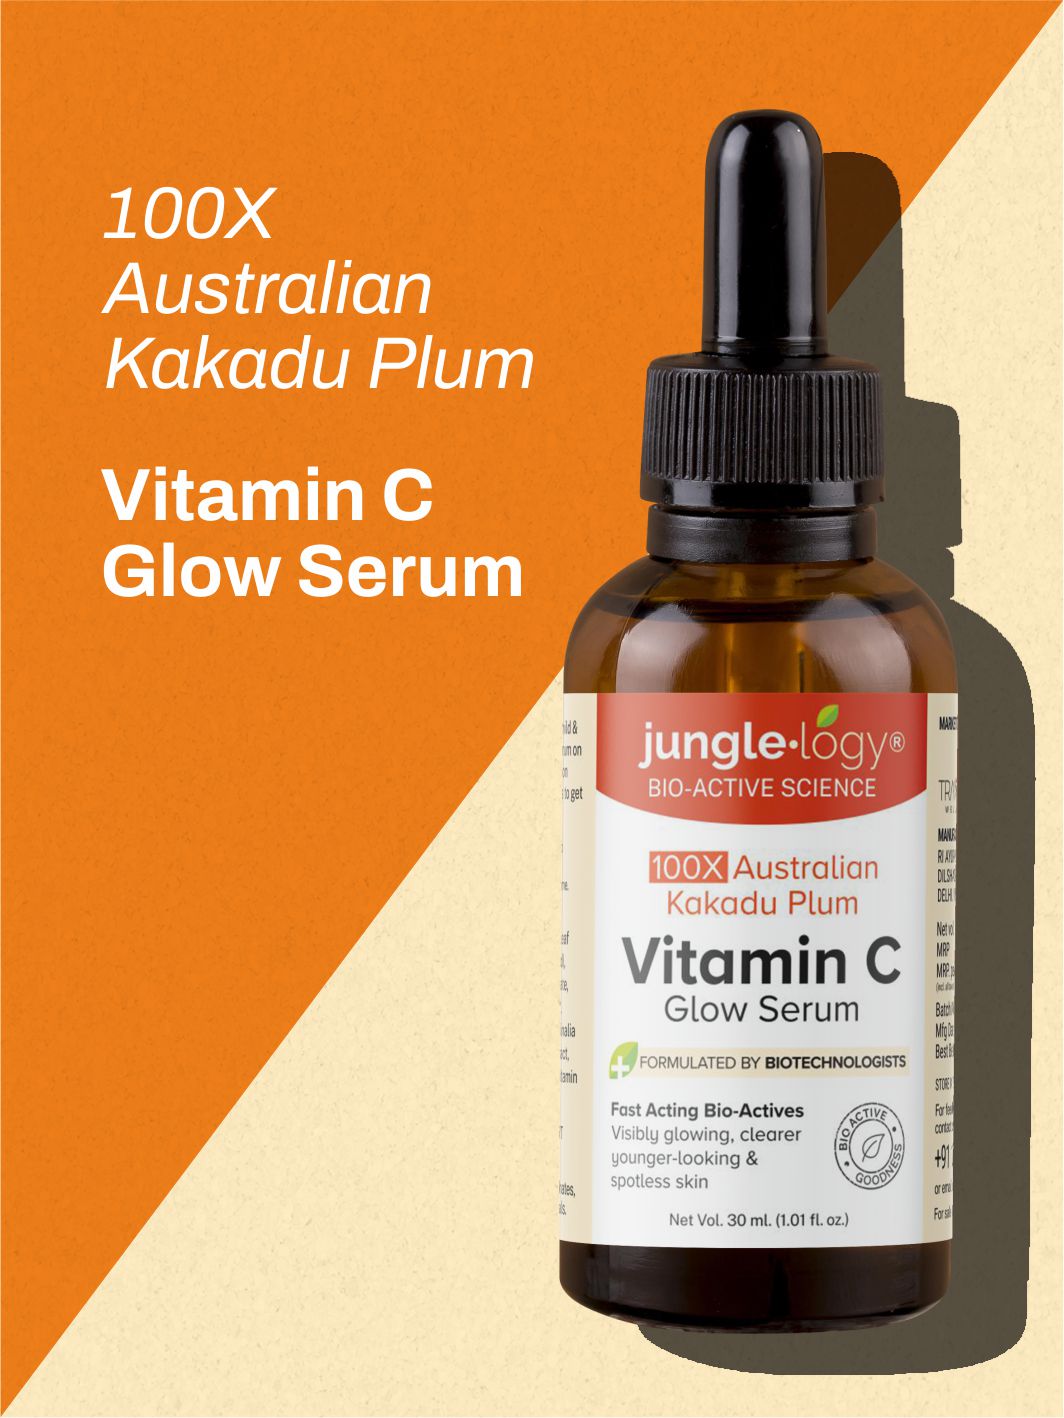 100X Australian Kakadu Plum Vitamin C Glow Serum